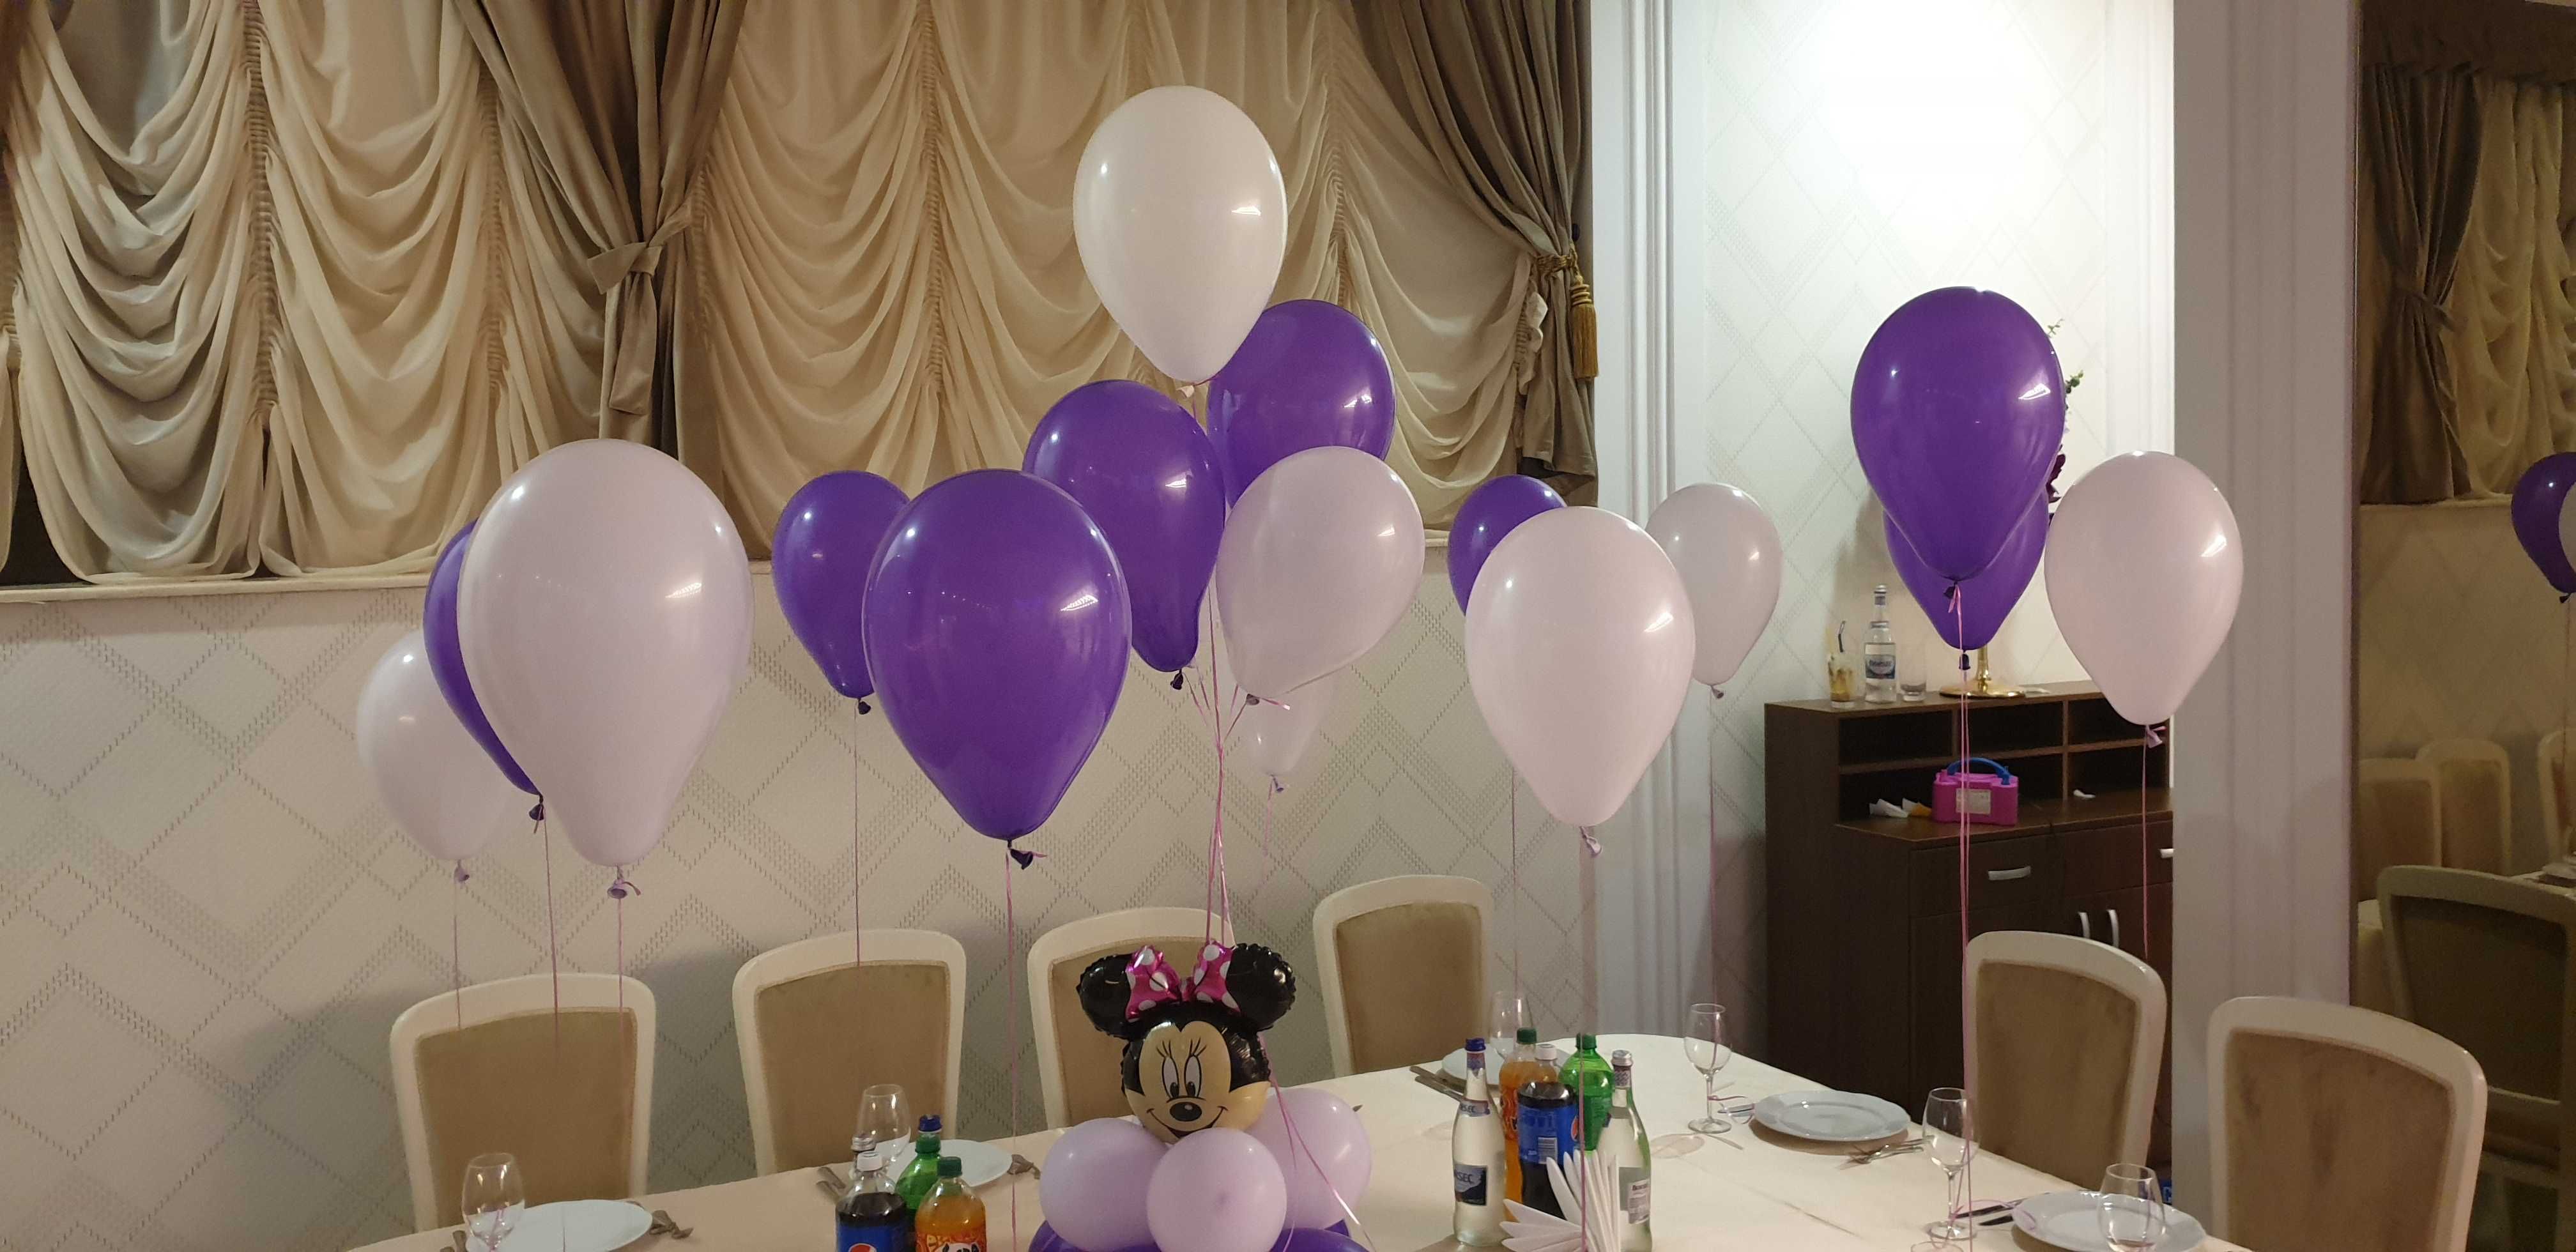 Decoratiuni din baloane si baloane cu heliu